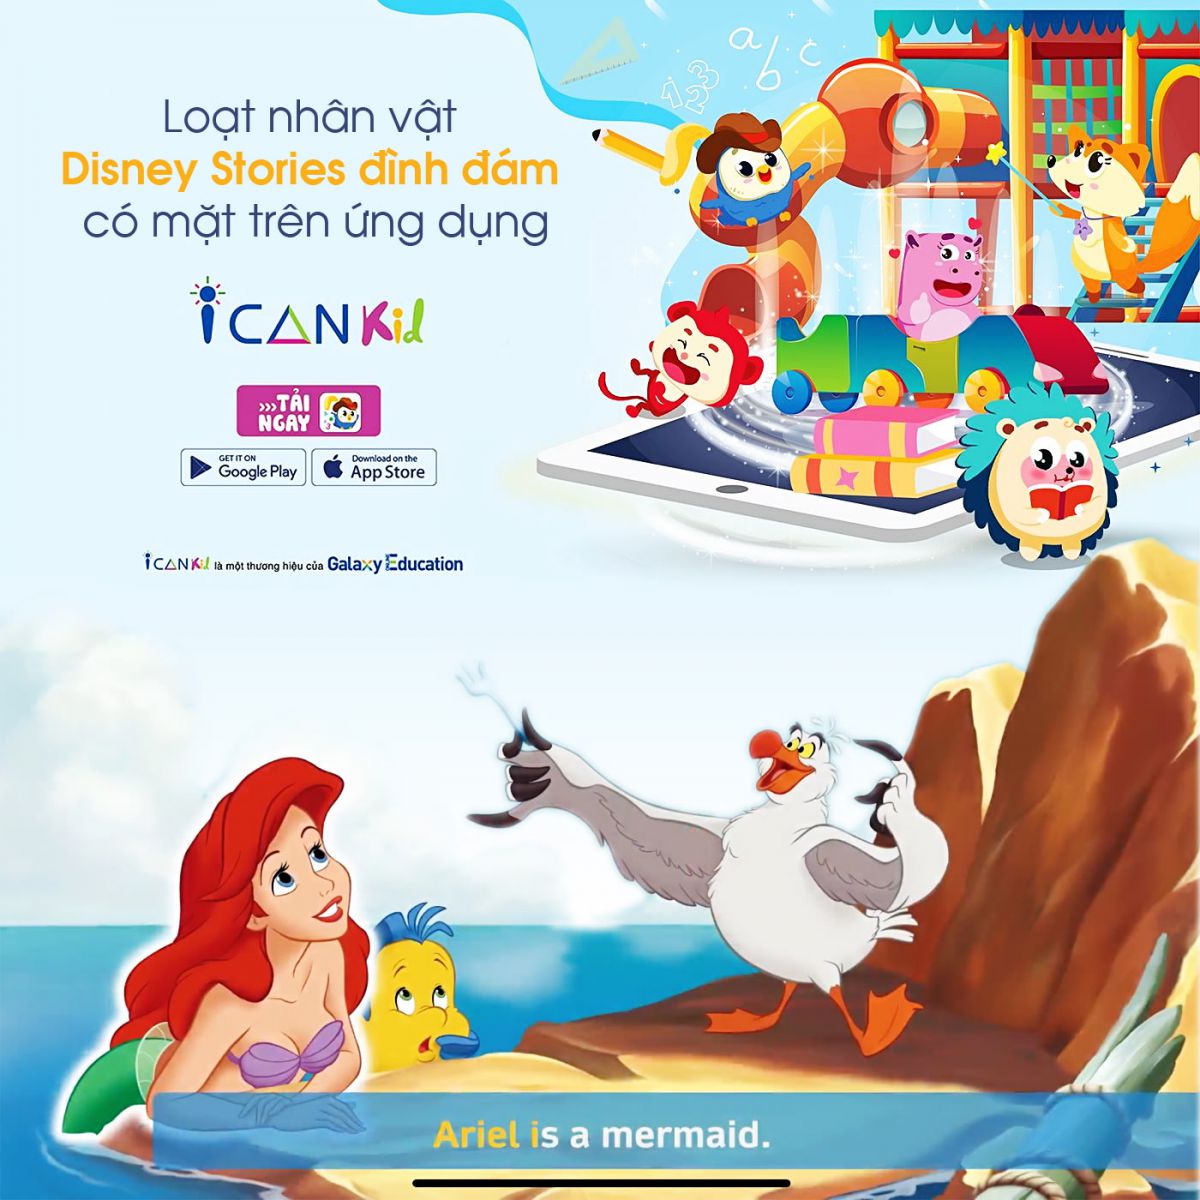 Loạt nhân vật Disney Stories đình đám có mặt trên ứng dụng ICANKid của Galaxy Education - Ảnh 1